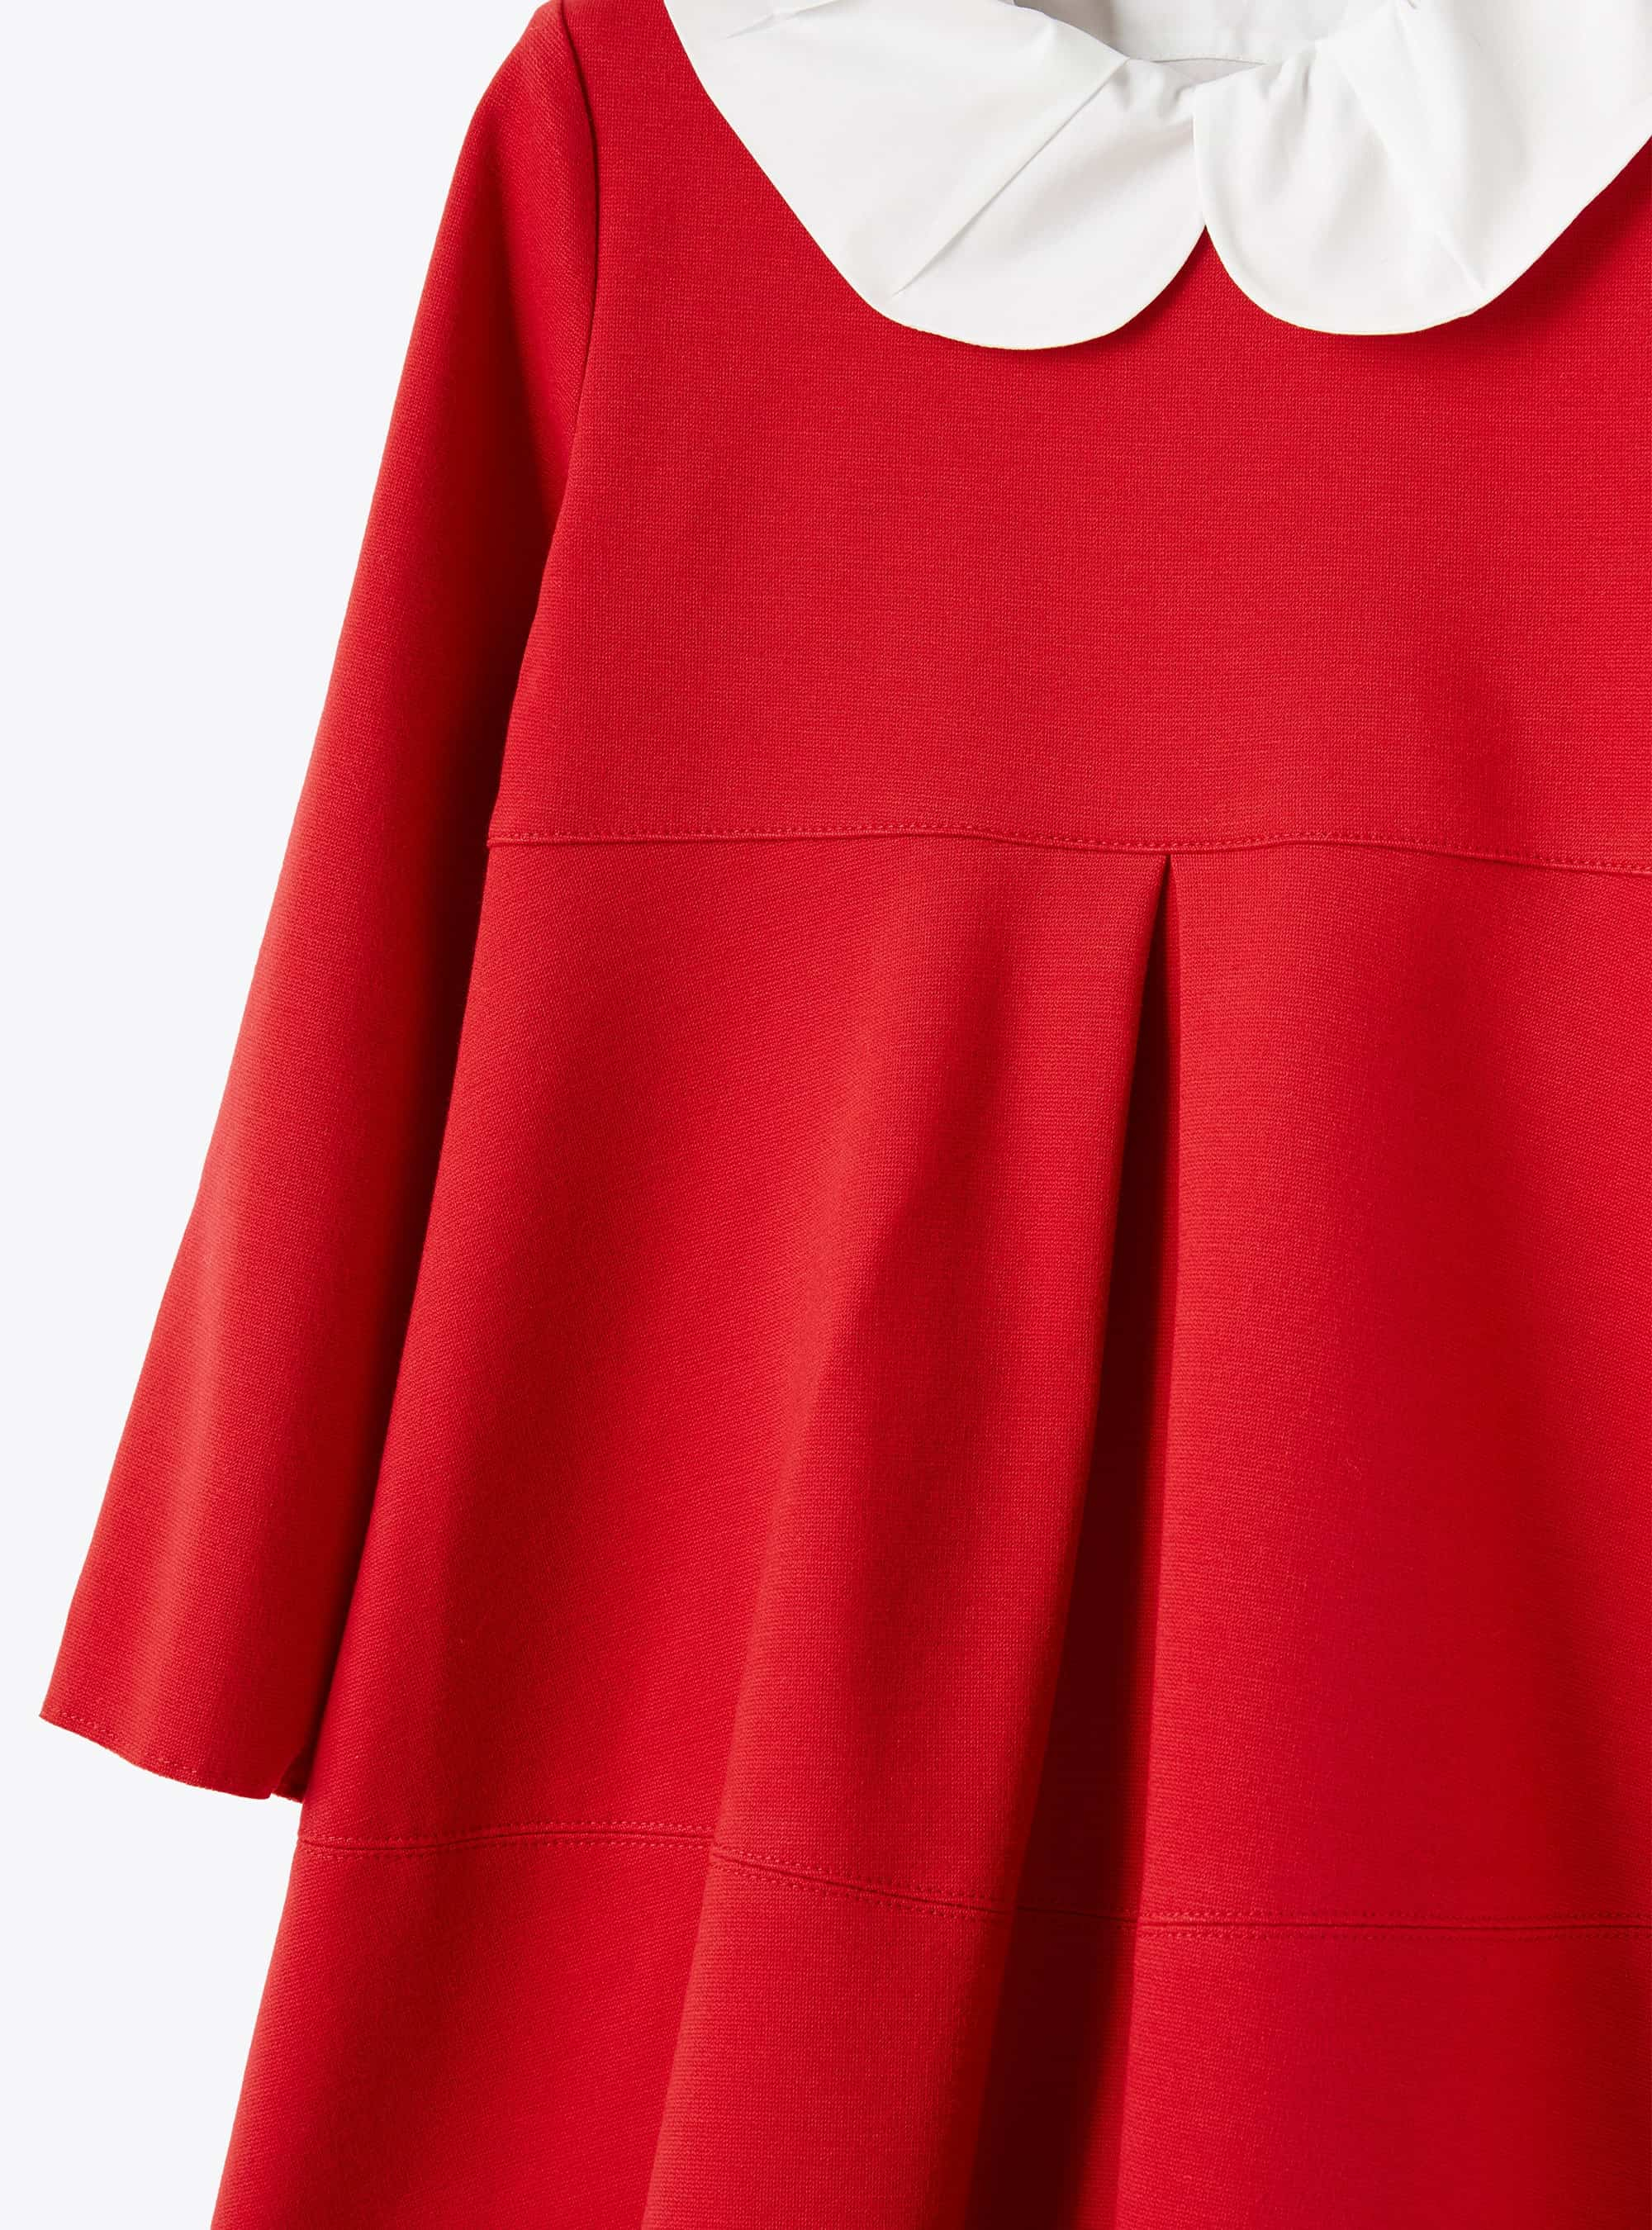 Box pleat red dress - Red | Il Gufo